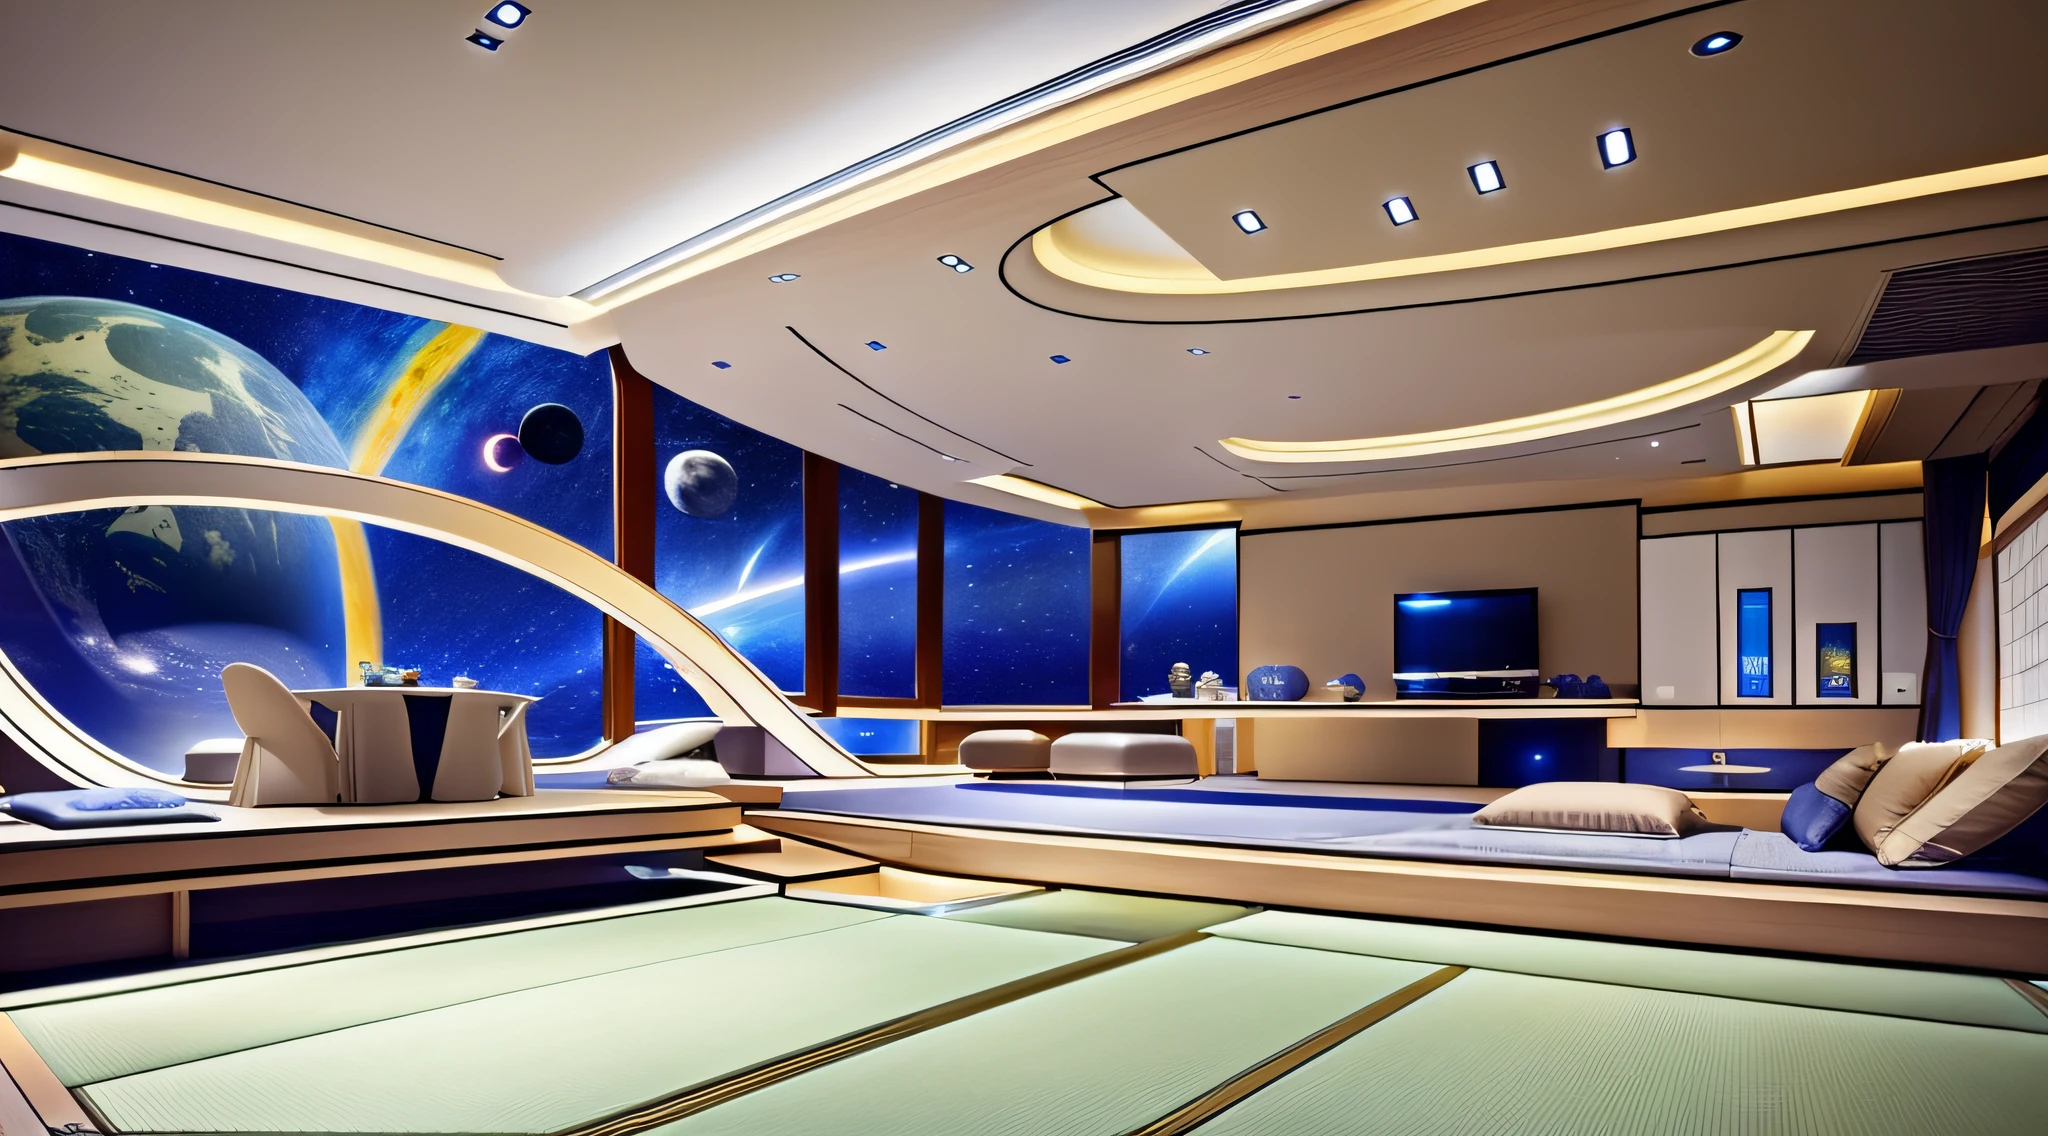 Conception de salon moderne、Le sol et le plafond sont transparents pour que vous puissiez voir l&#39;espace extérieur、Il y a un majordome androïde dans la chambre.、Un style japonais、jpn、espace cosmique、chef d&#39;oeuvre、réaliste、８K